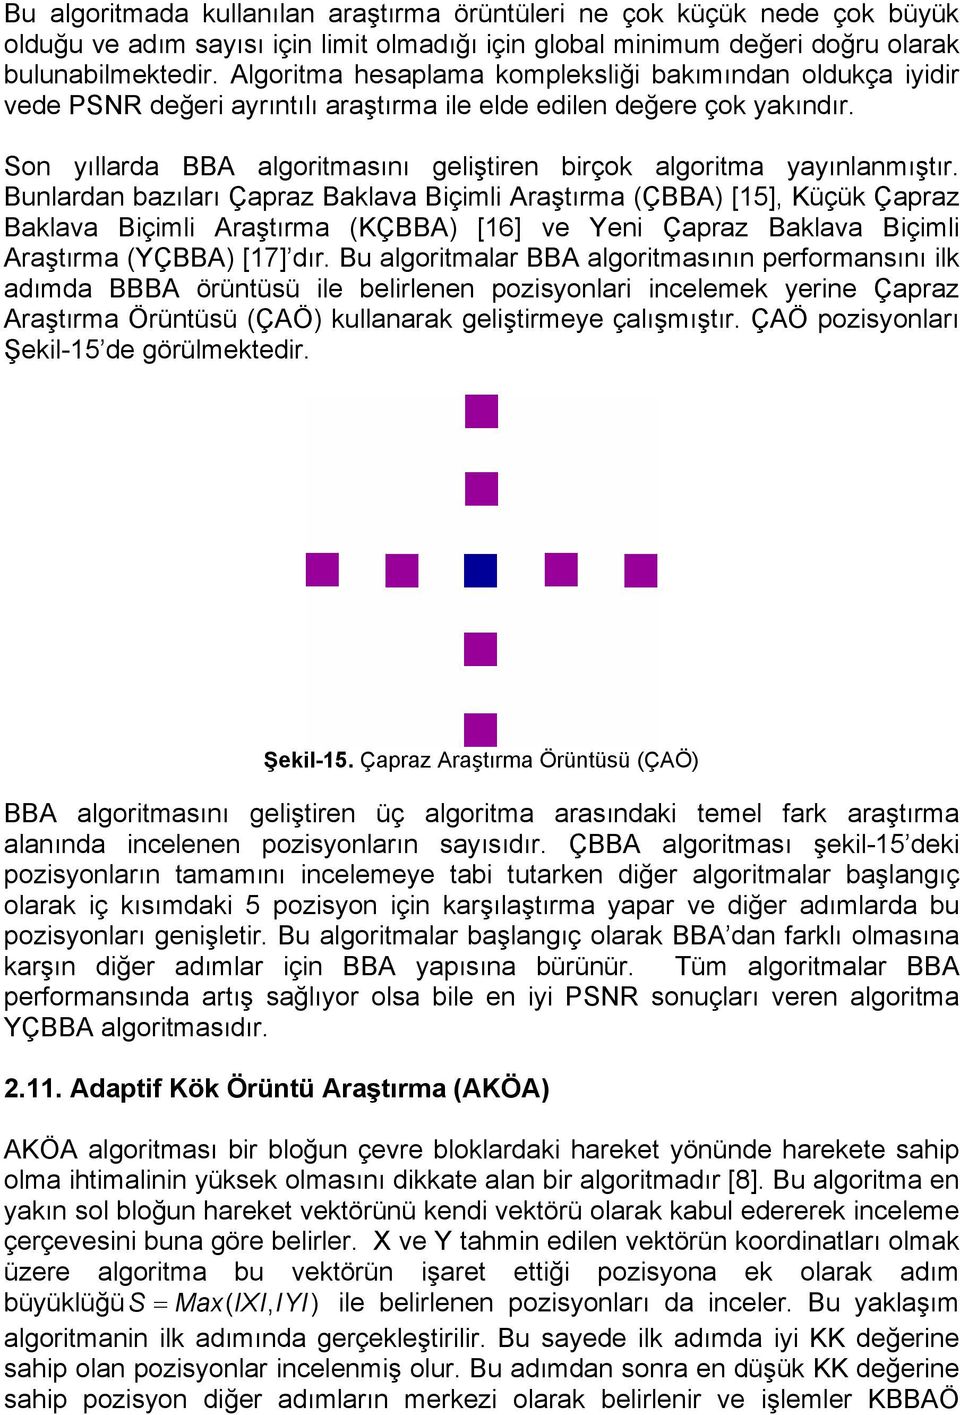 Son yıllarda BBA algoritmasını geliştiren birçok algoritma yayınlanmıştır.